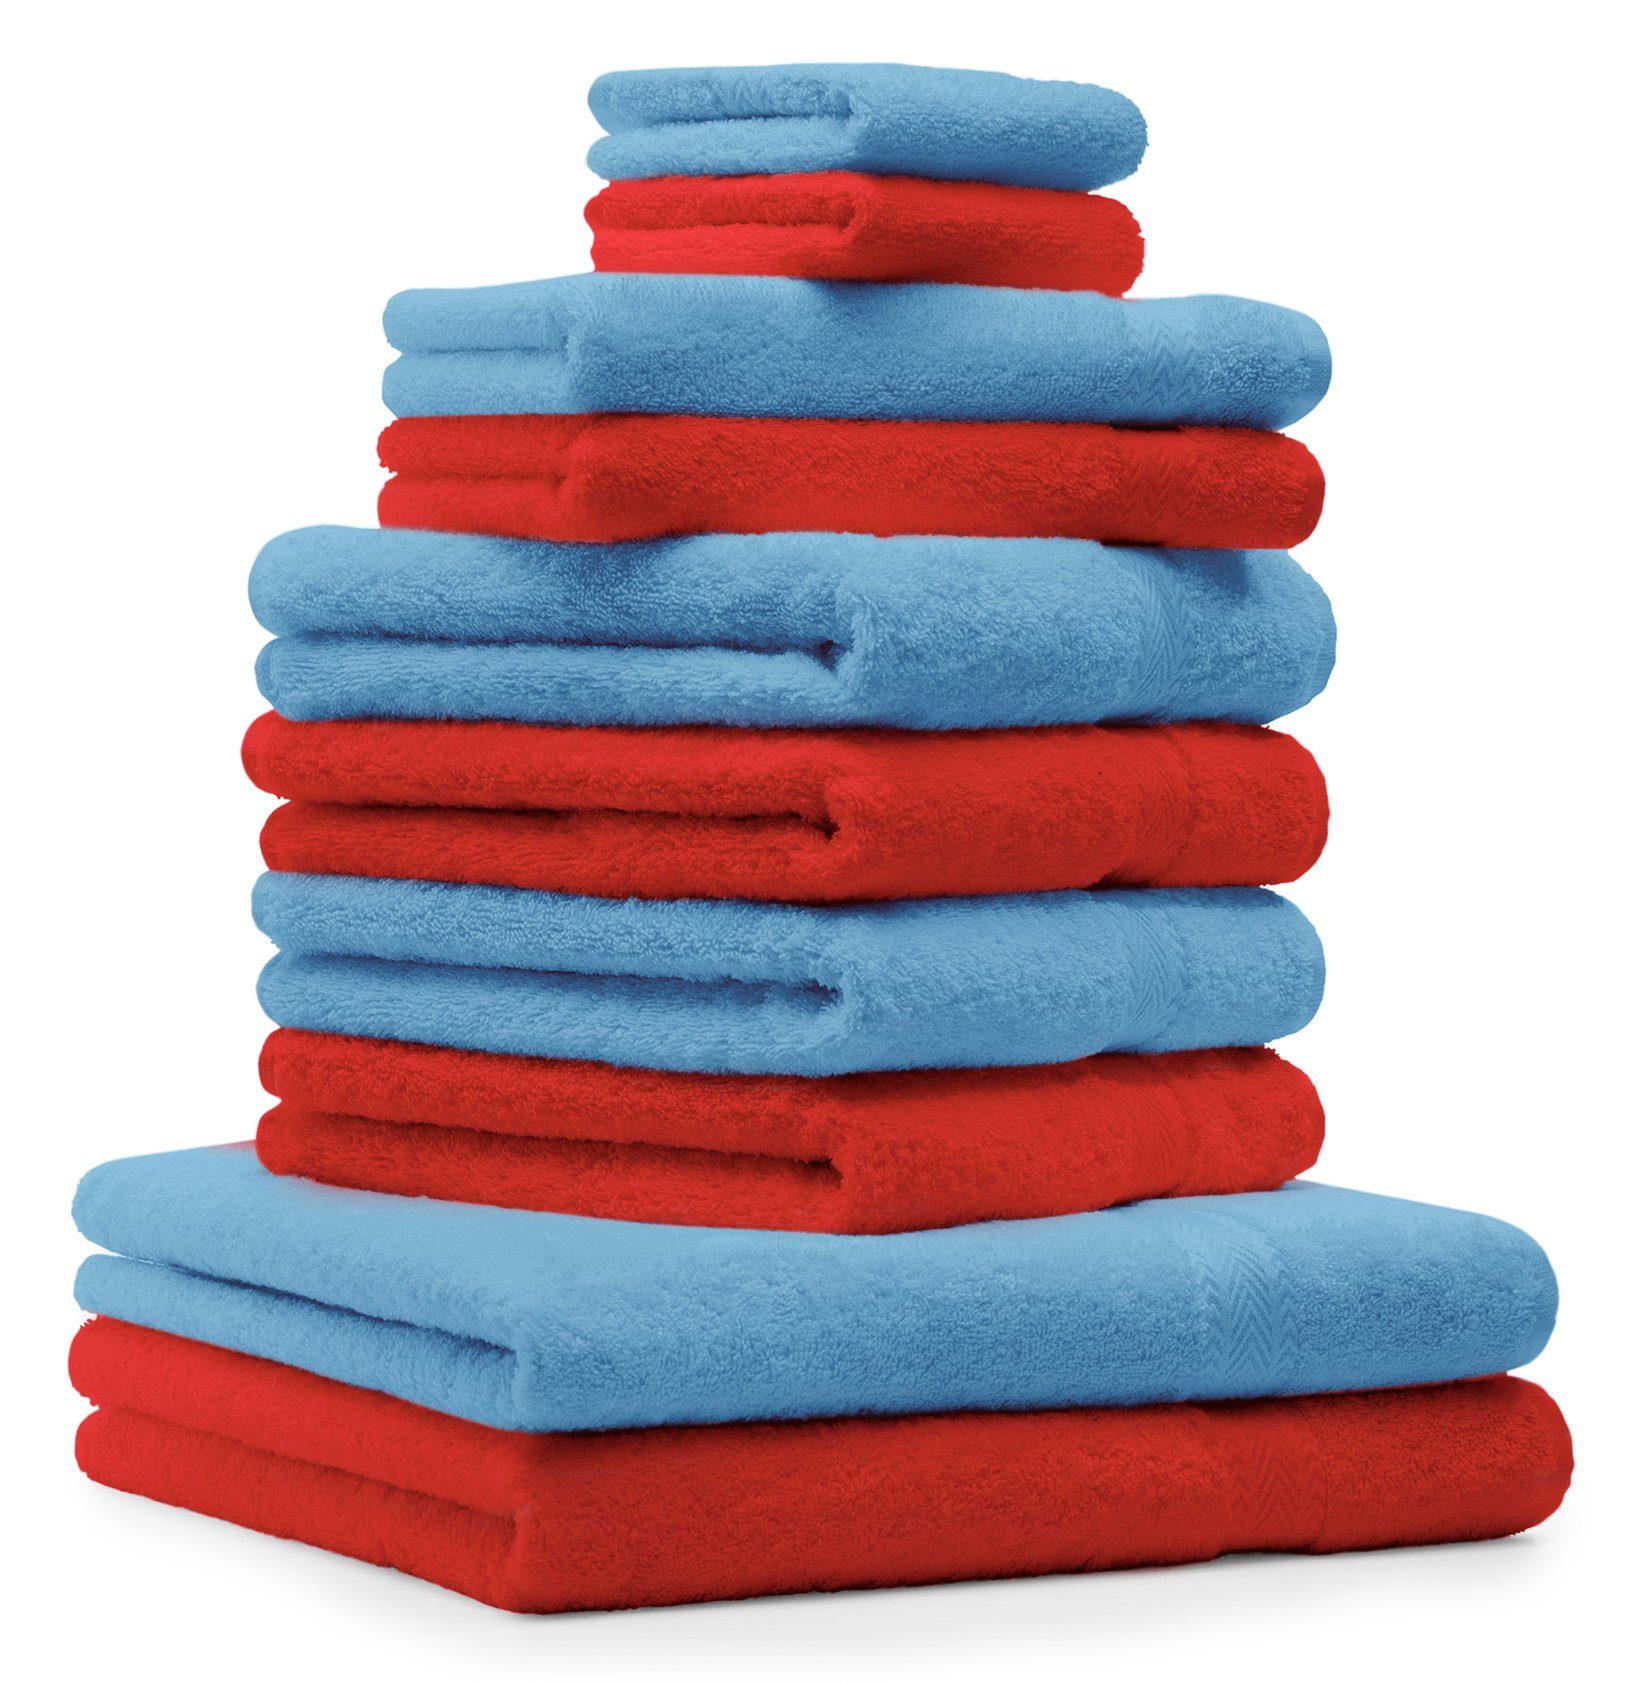 Betz Handtuch Set 10-TLG. Handtuch-Set CLASSIC 100% Baumwolle Farbe rot und hellblau, 100% Baumwolle